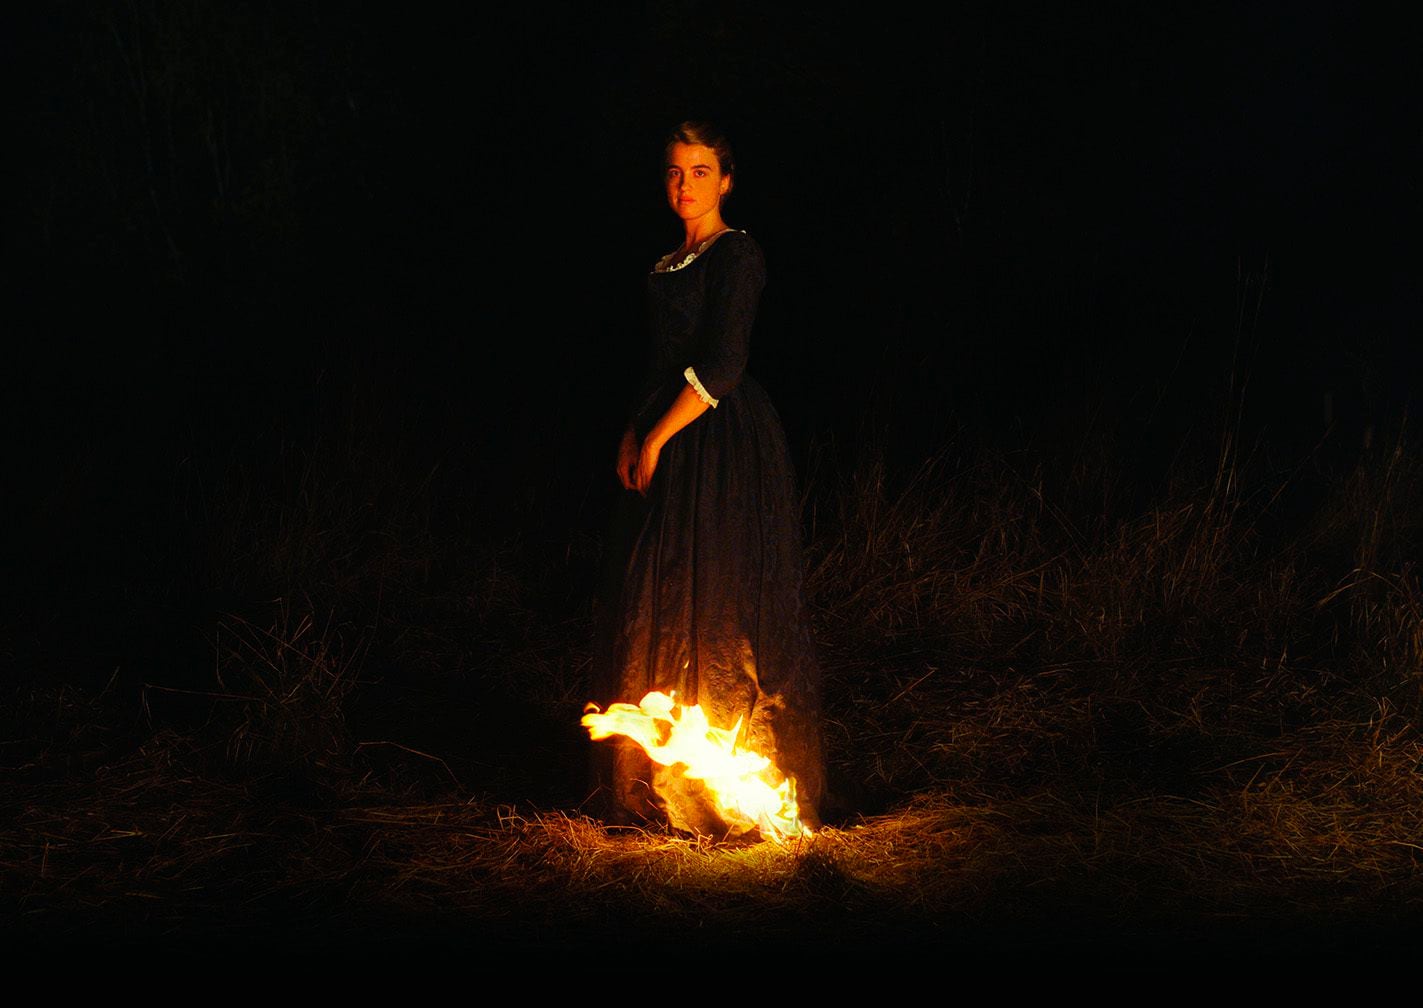 Adèle Haenel en una escena de "Portrait of a Lady on Fire" (“Portrait de la jeune fille en feu”) en una imagen proporcionada por Neon. (Neon via AP)